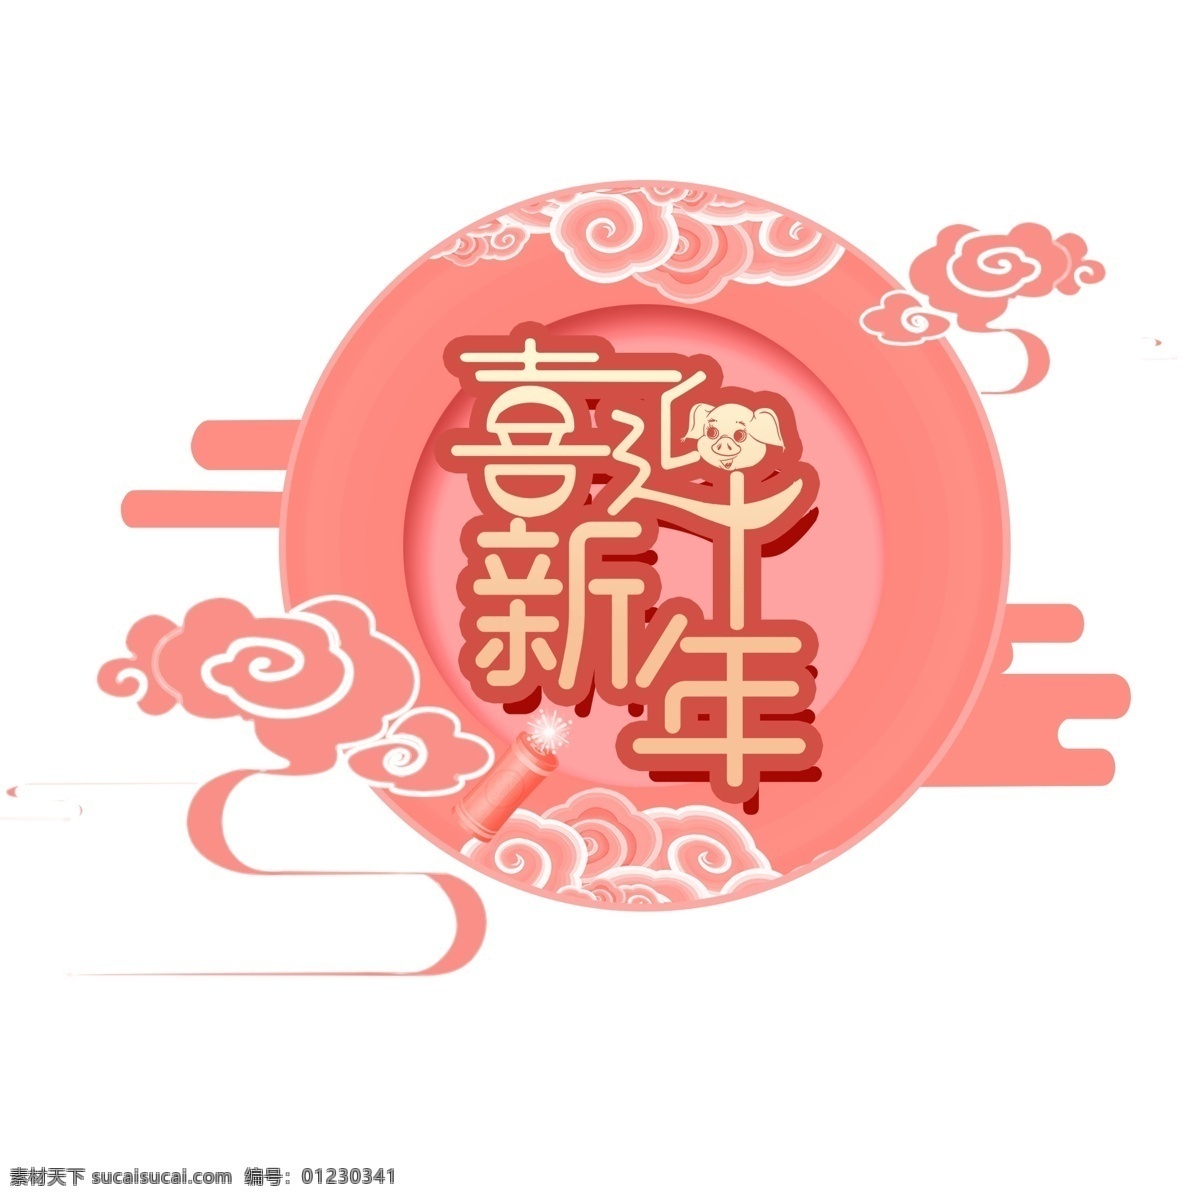 2019 珊瑚 橘 新年 艺术 字 灯笼 海报 浪花 太阳 变形 喜迎新年 珊瑚红 乙亥 猪年字体